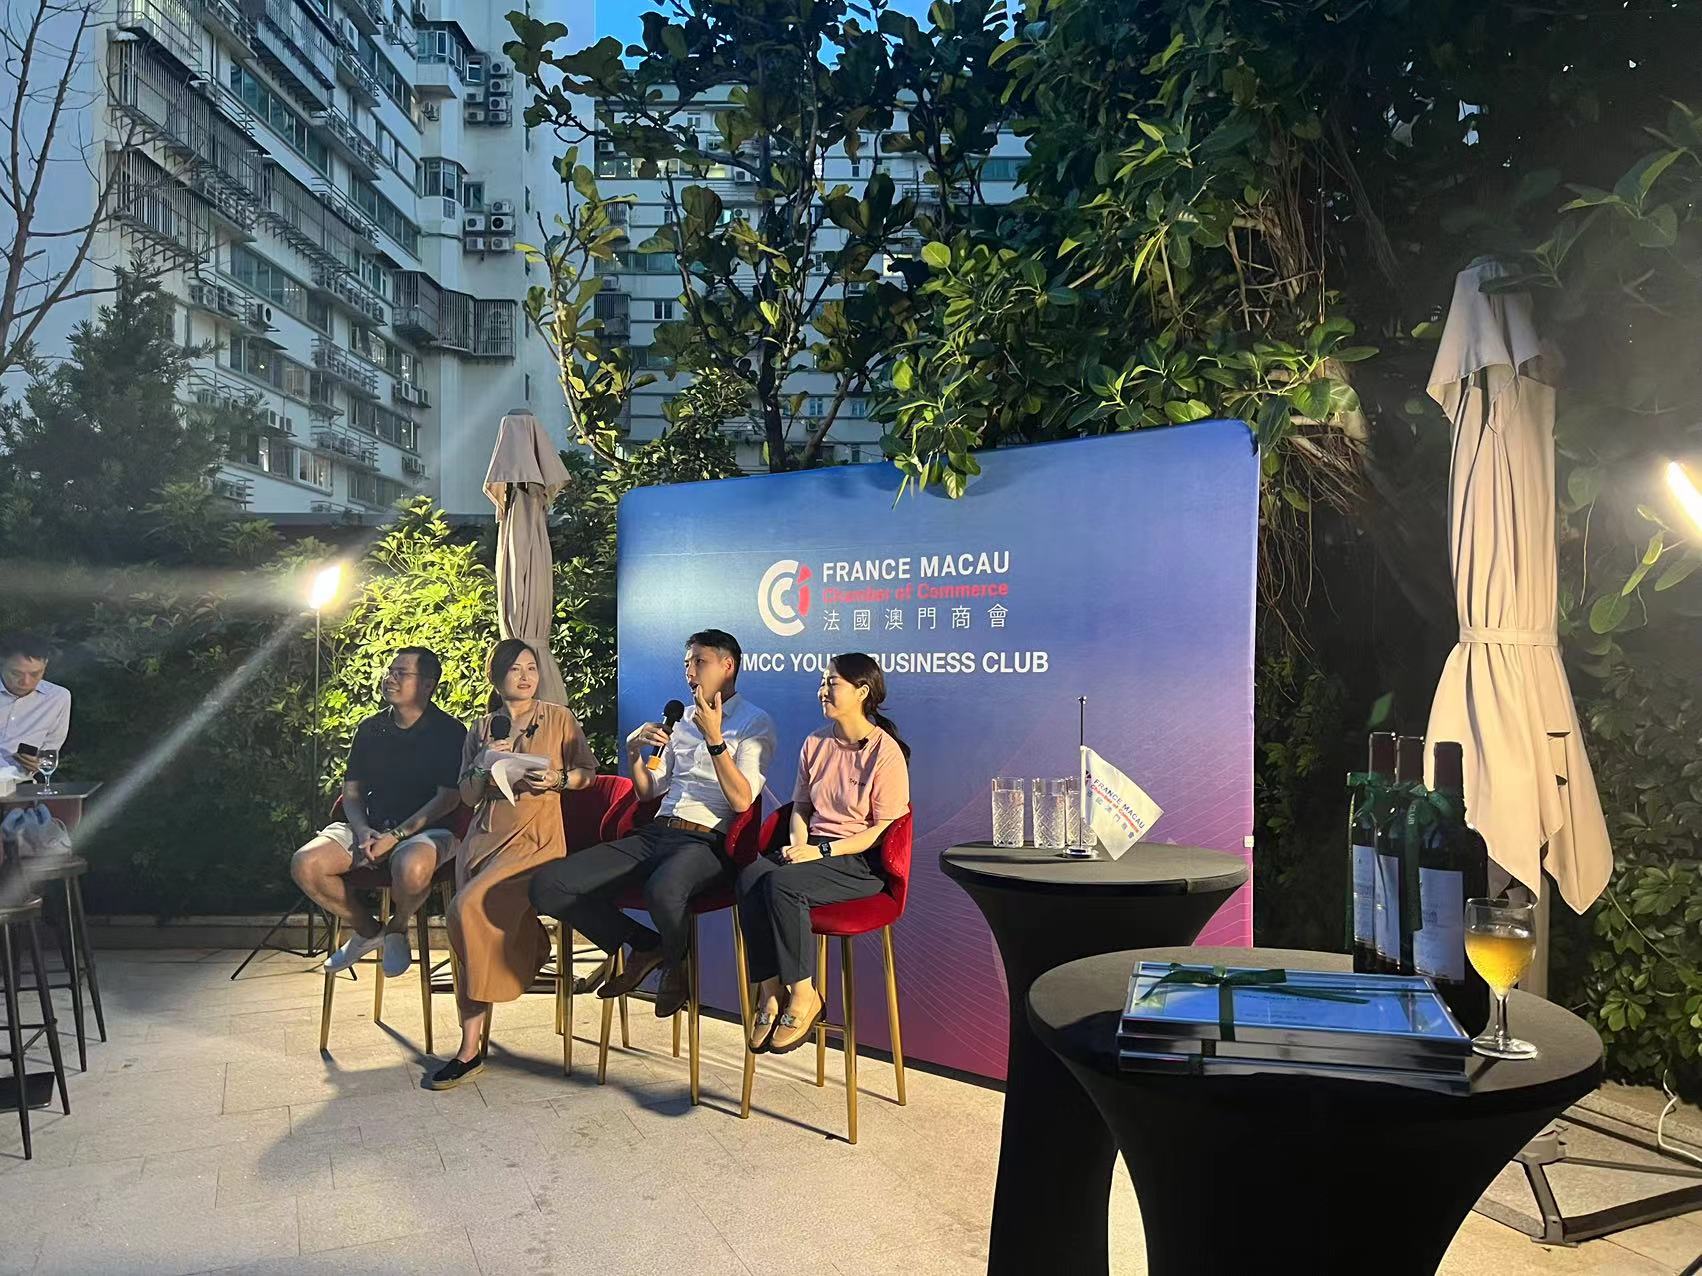 Die französische Handelskammer von Macau hat den Entrepreneurship Club für aufstrebende junge Menschen gegründet